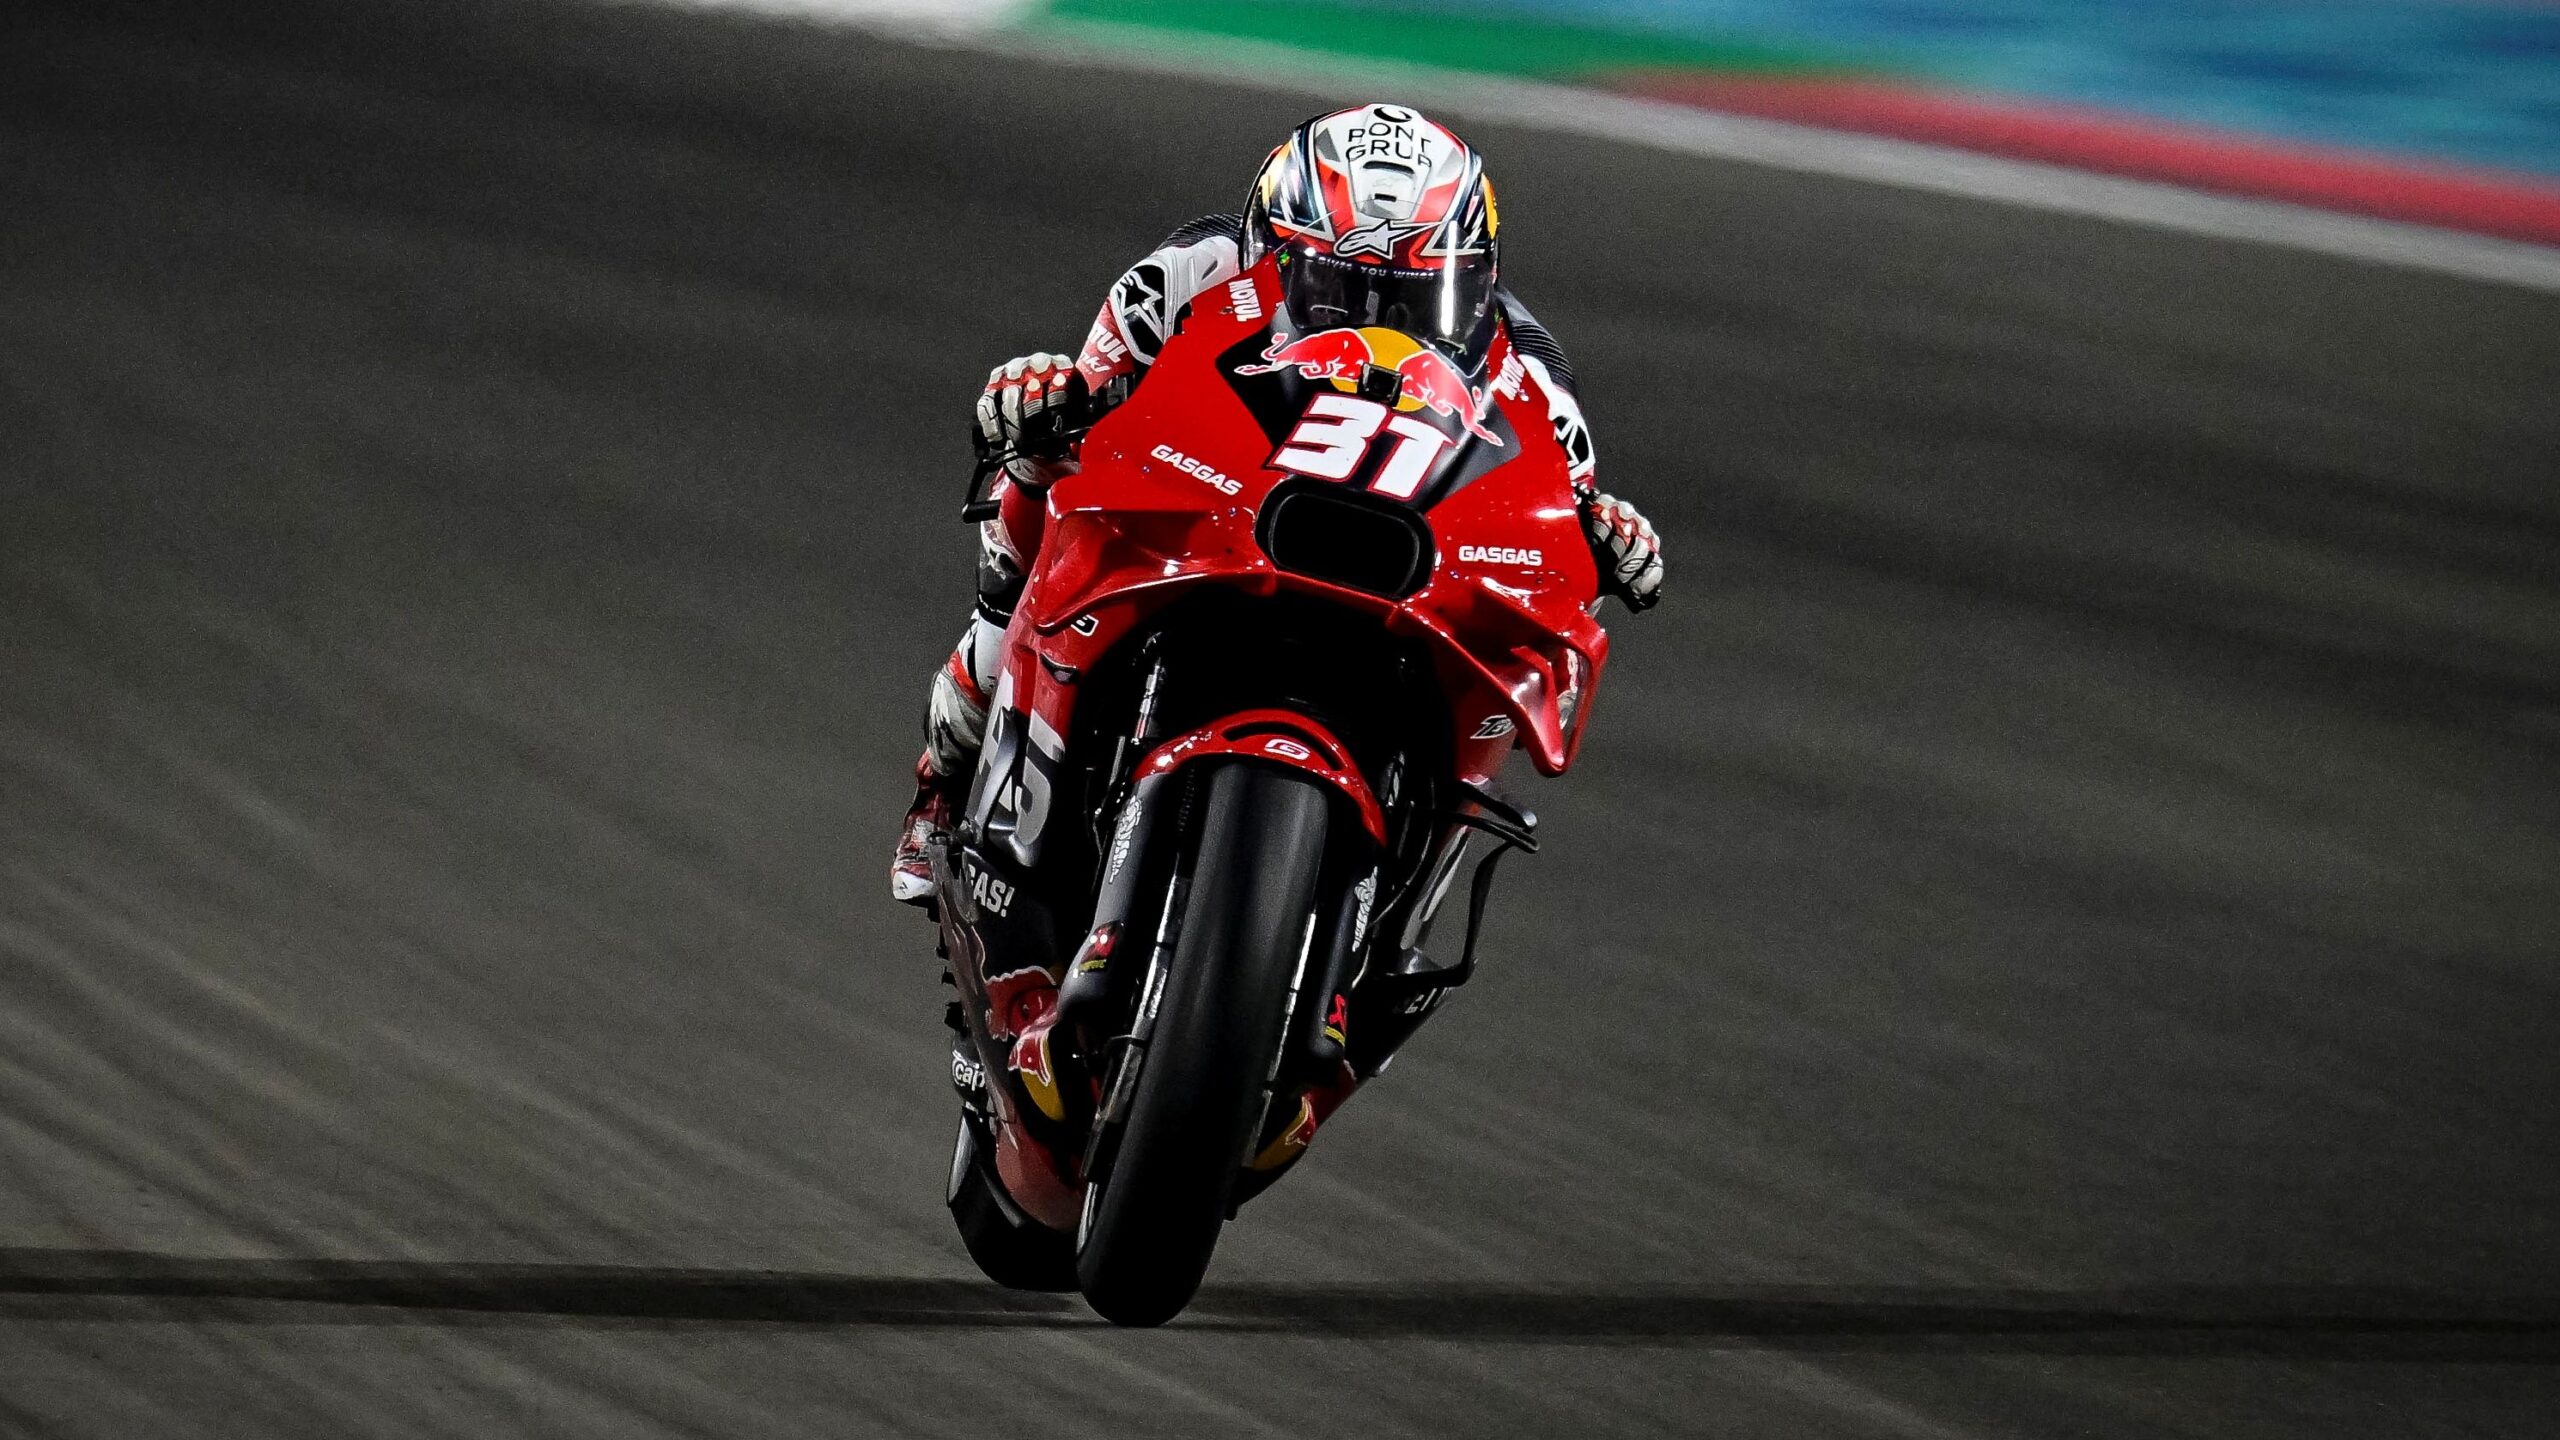 Pedro Acosta Akan Jalani Debut MotoGP di Losail